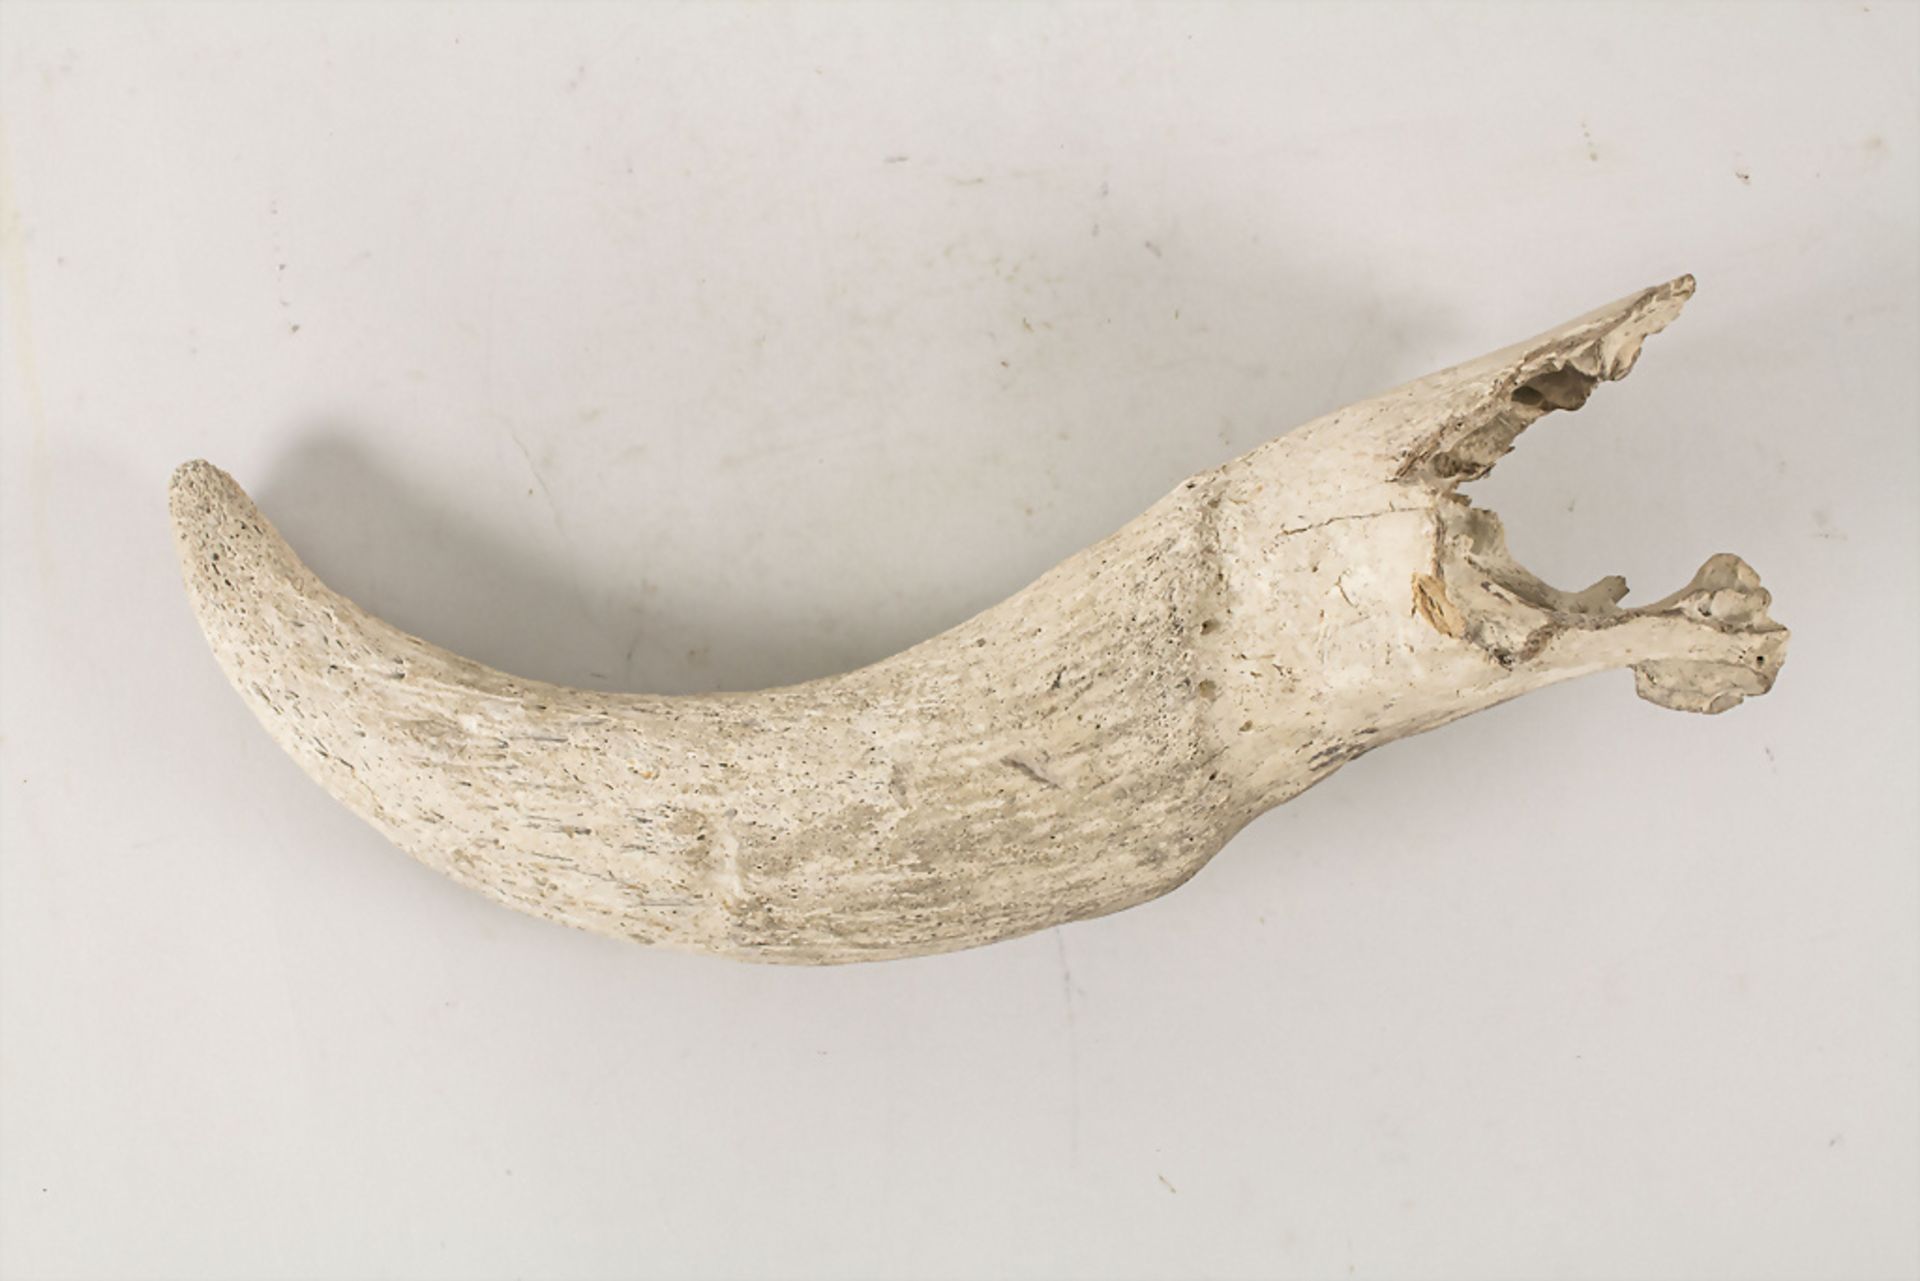 Versteinertes Nashornhorn / A fossilized rhino horn - Image 2 of 4